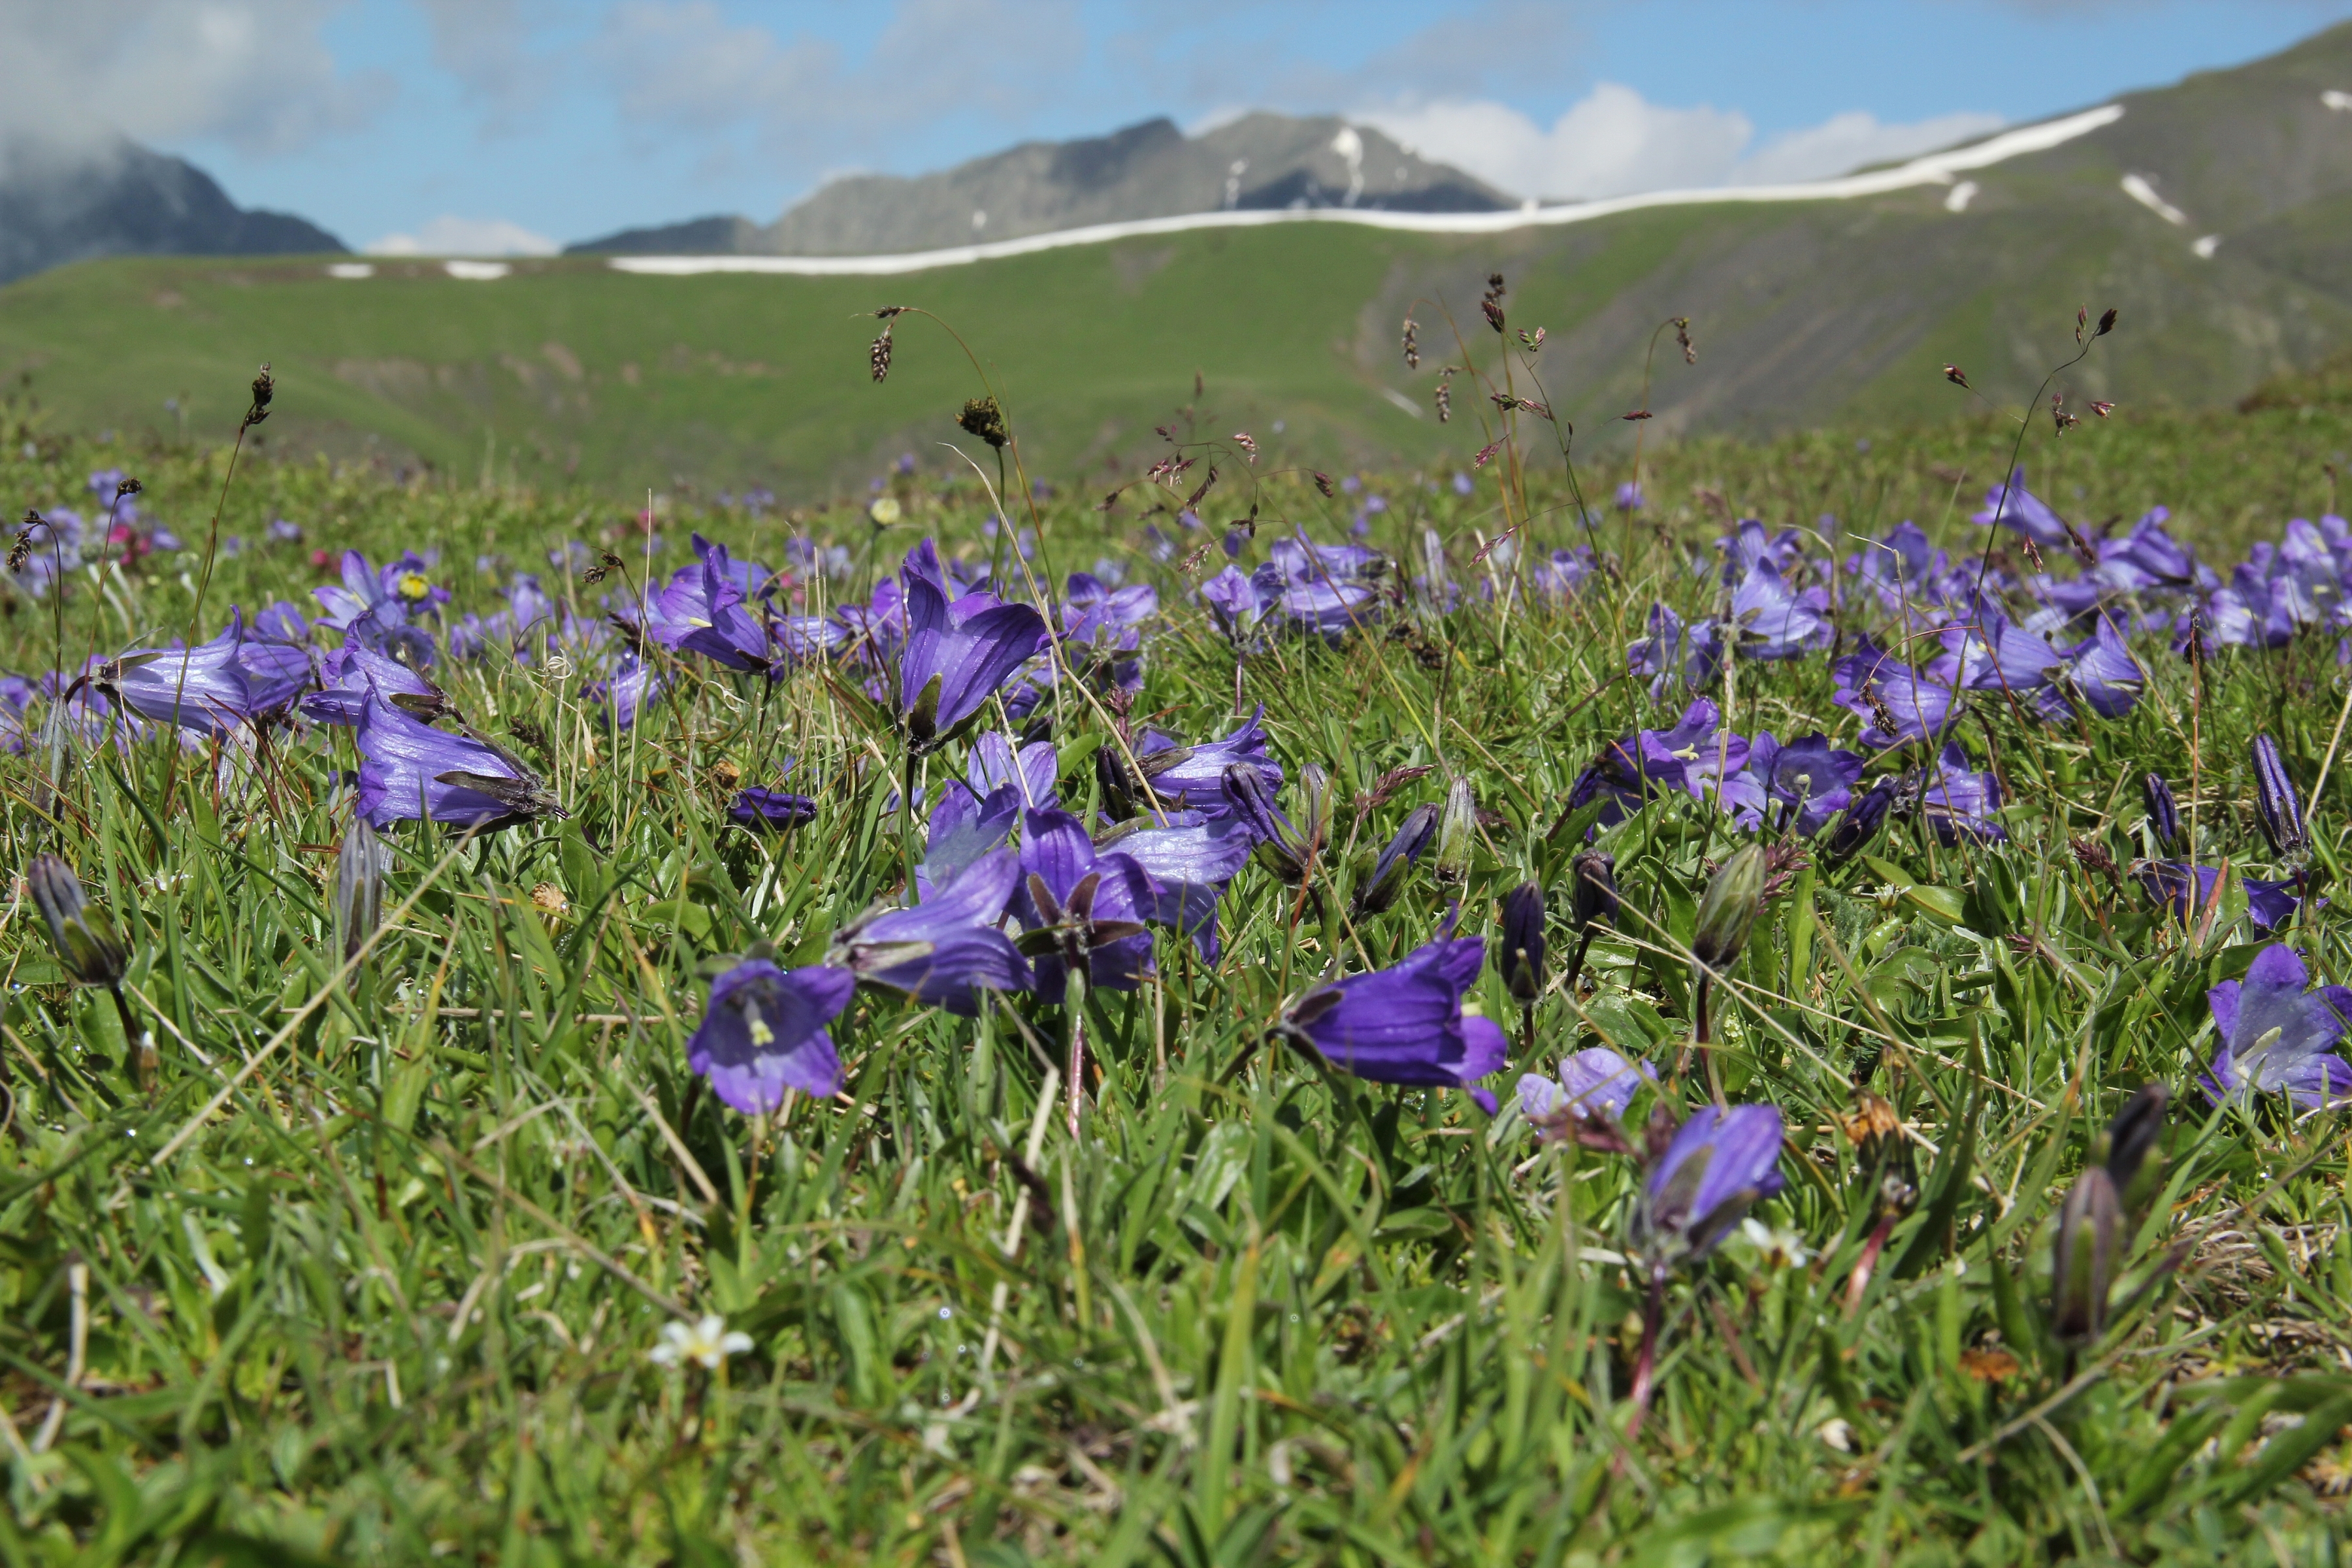 Kavkaz, pohoří protínající více států o rozloze téměř 480 000 km2. Nezpochybnitelný „hot spot“, horké místo biodiverzity, významný opravdu v globálním měřítku. Foto Jakub Kašpar